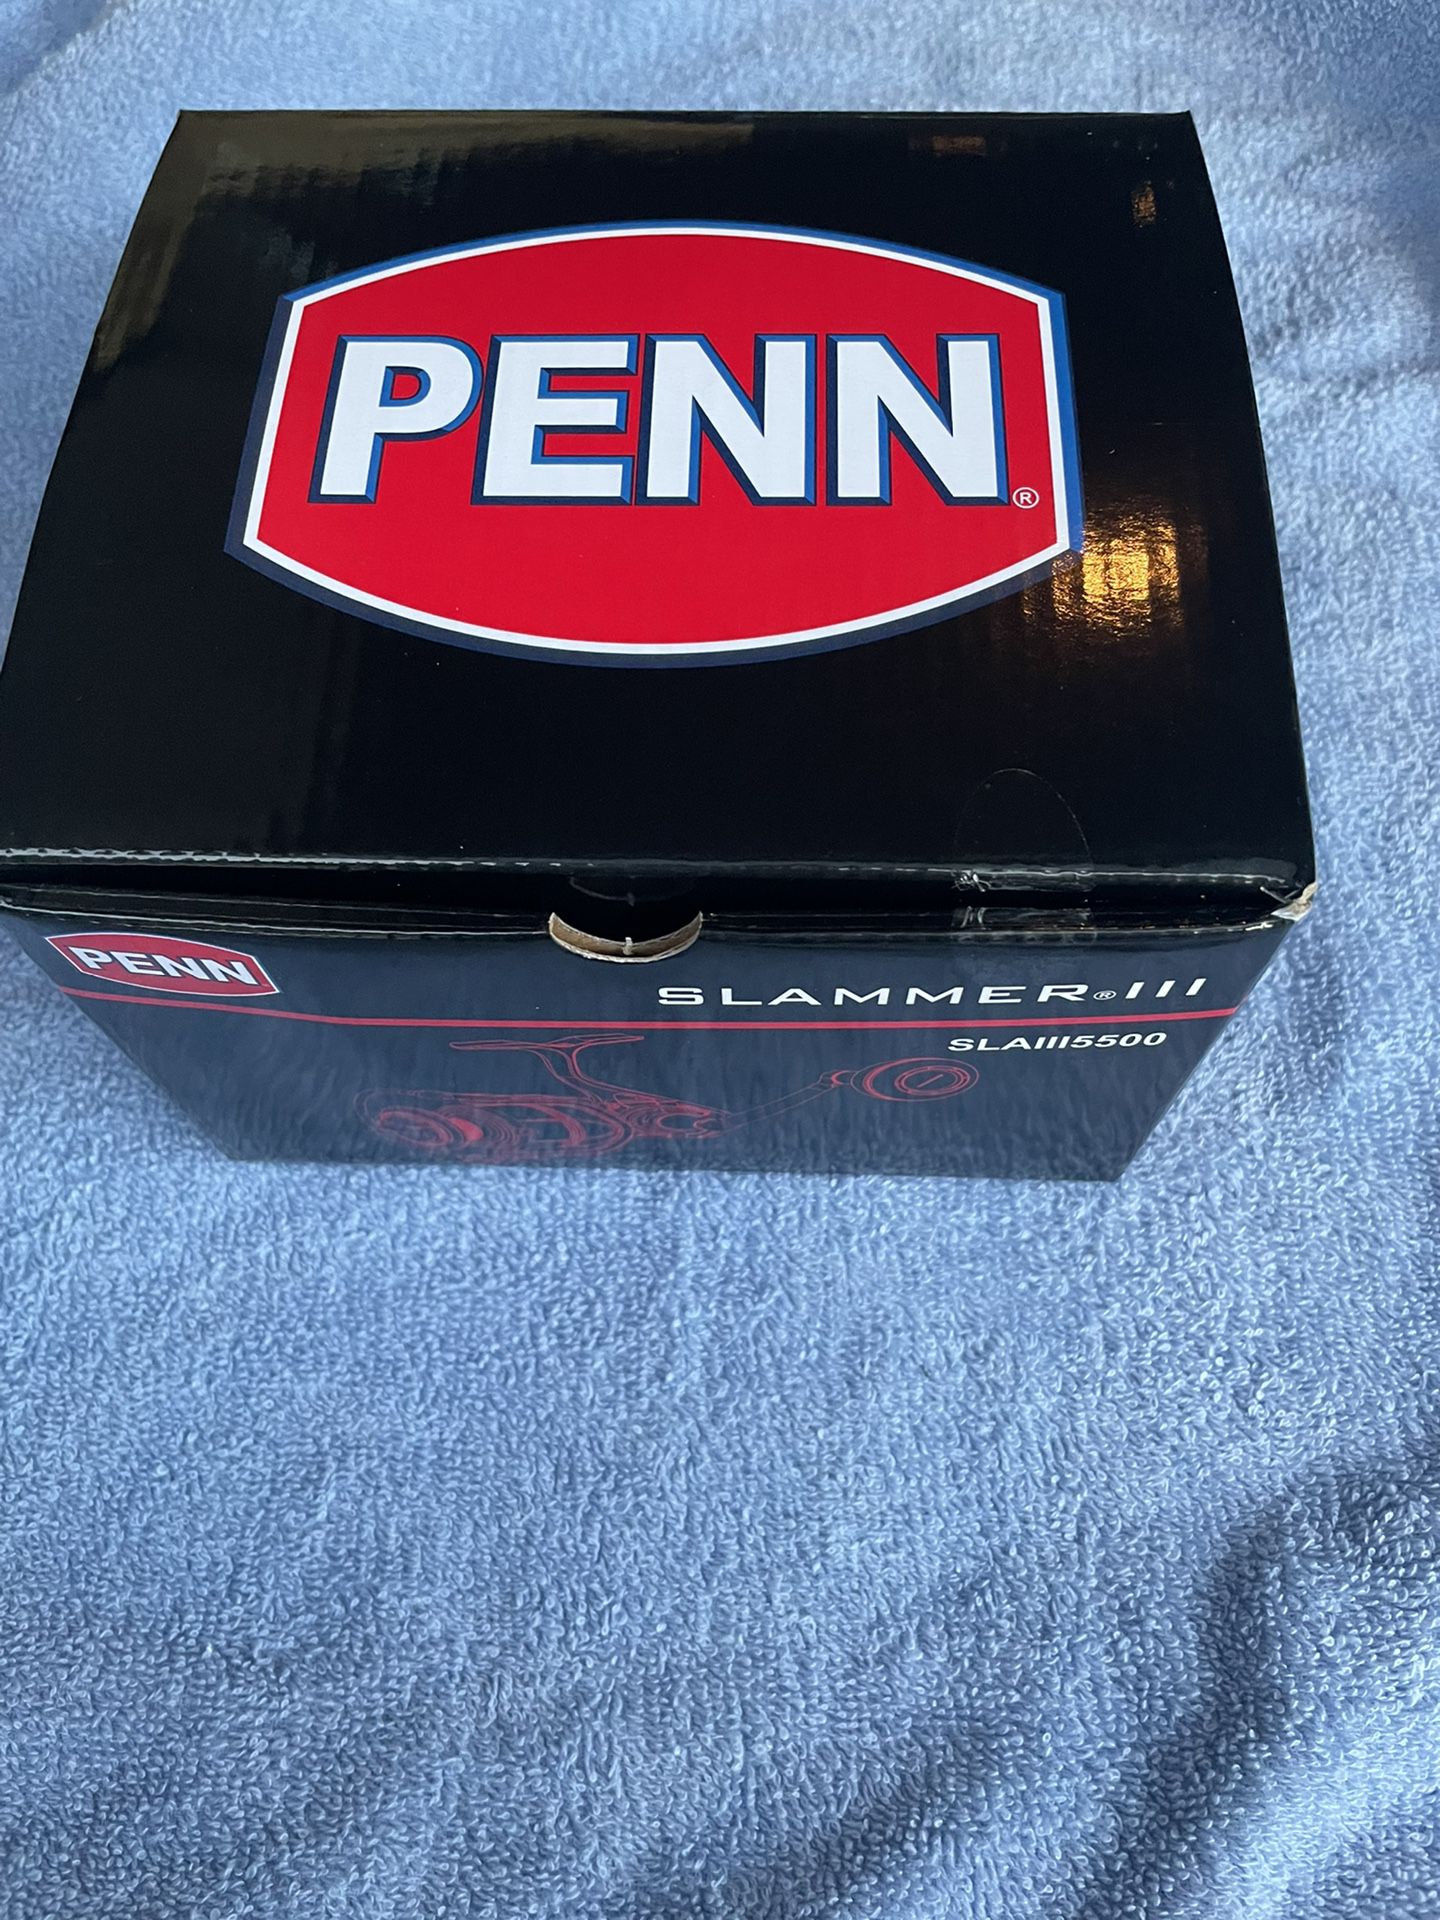 Penn 5500 Slammer 3 New In Box